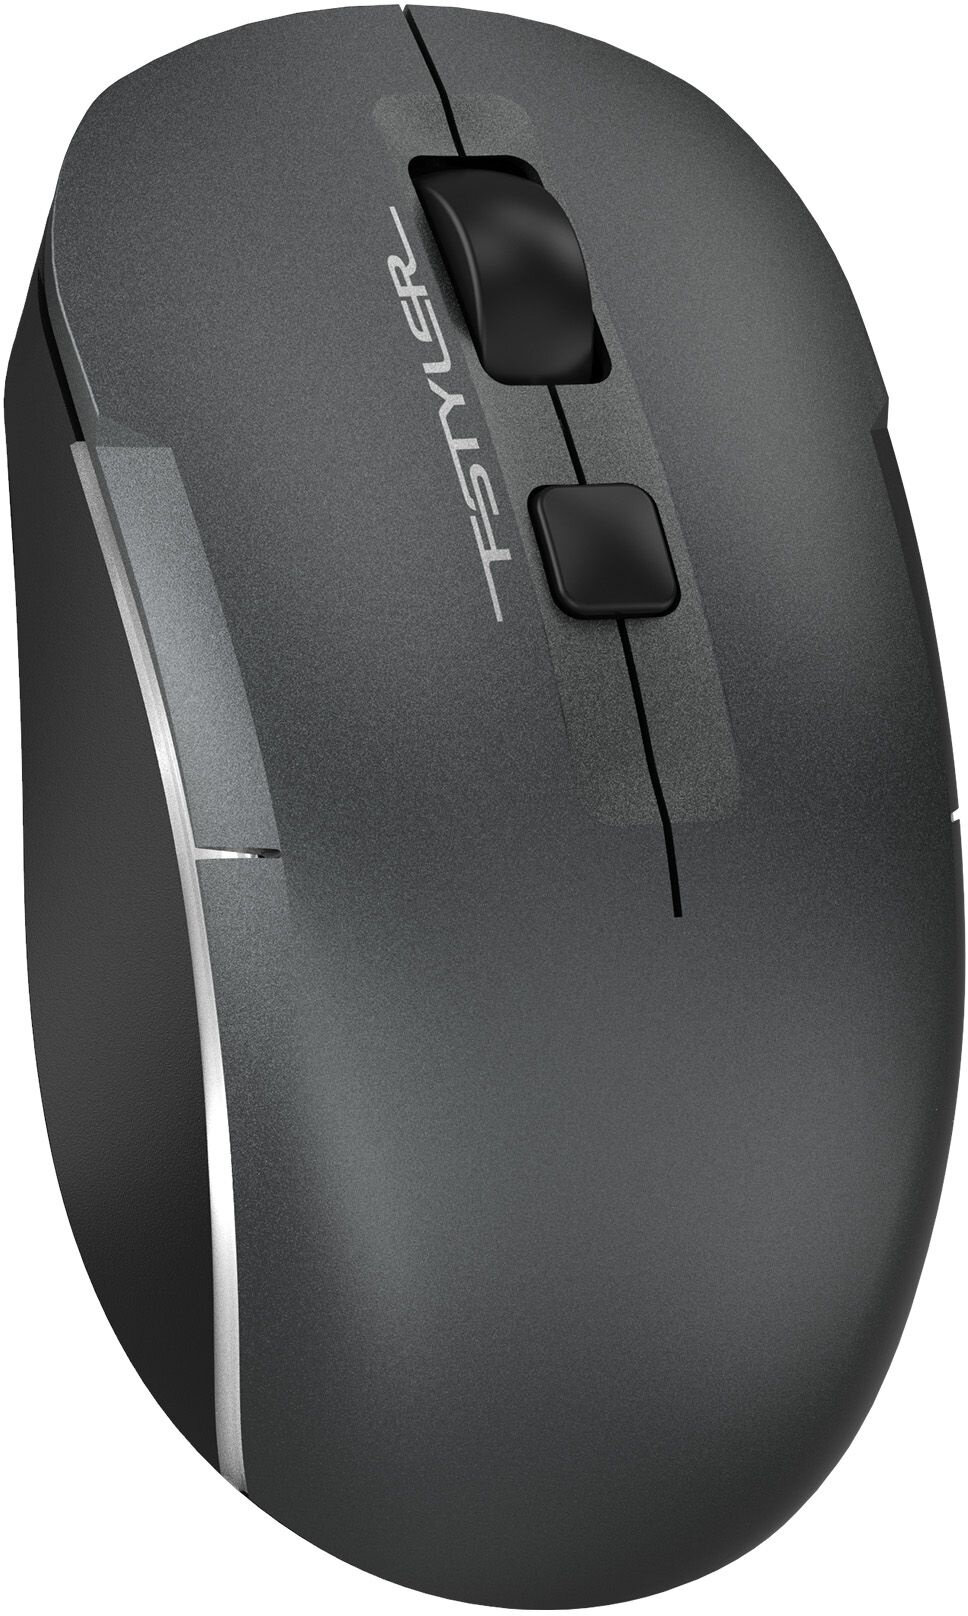 Мышь A4Tech Fstyler FB26CS Air серый/черный оптическая (2000dpi) silent беспроводная BT/Radio USB для ноутбука (4but)